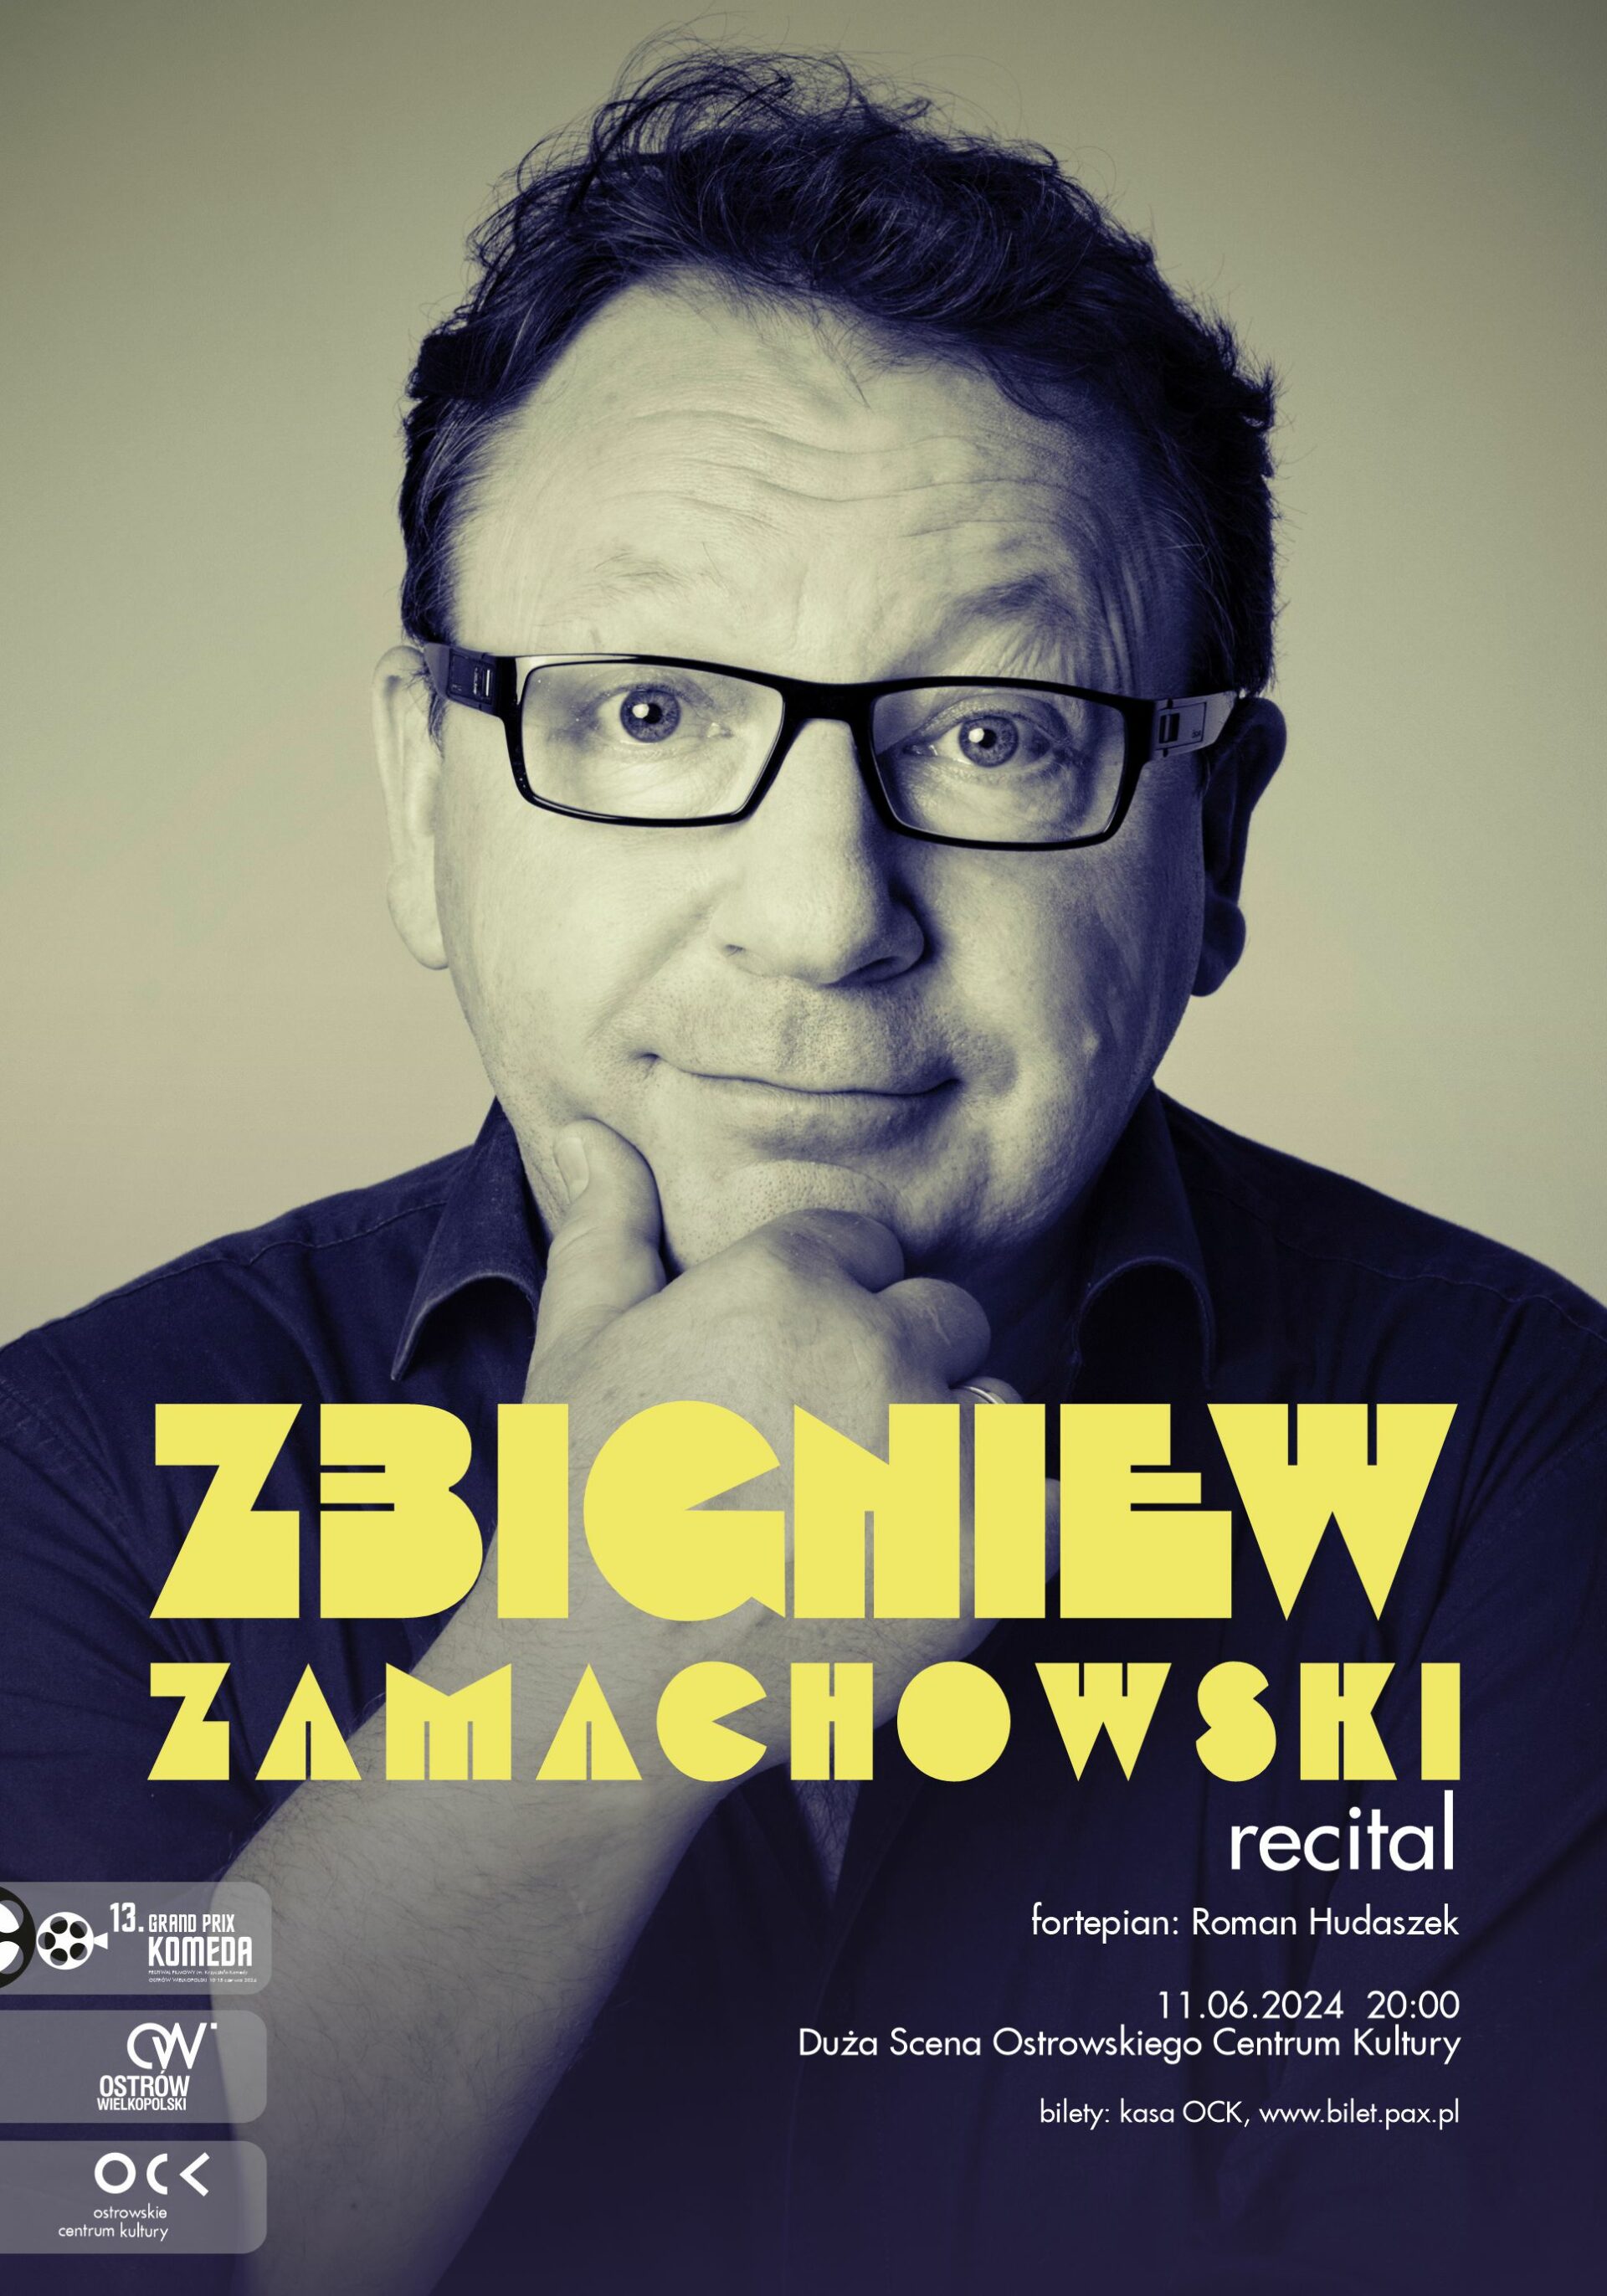 13. Grand Prix Komeda | Zbigniew Zamachowski recital